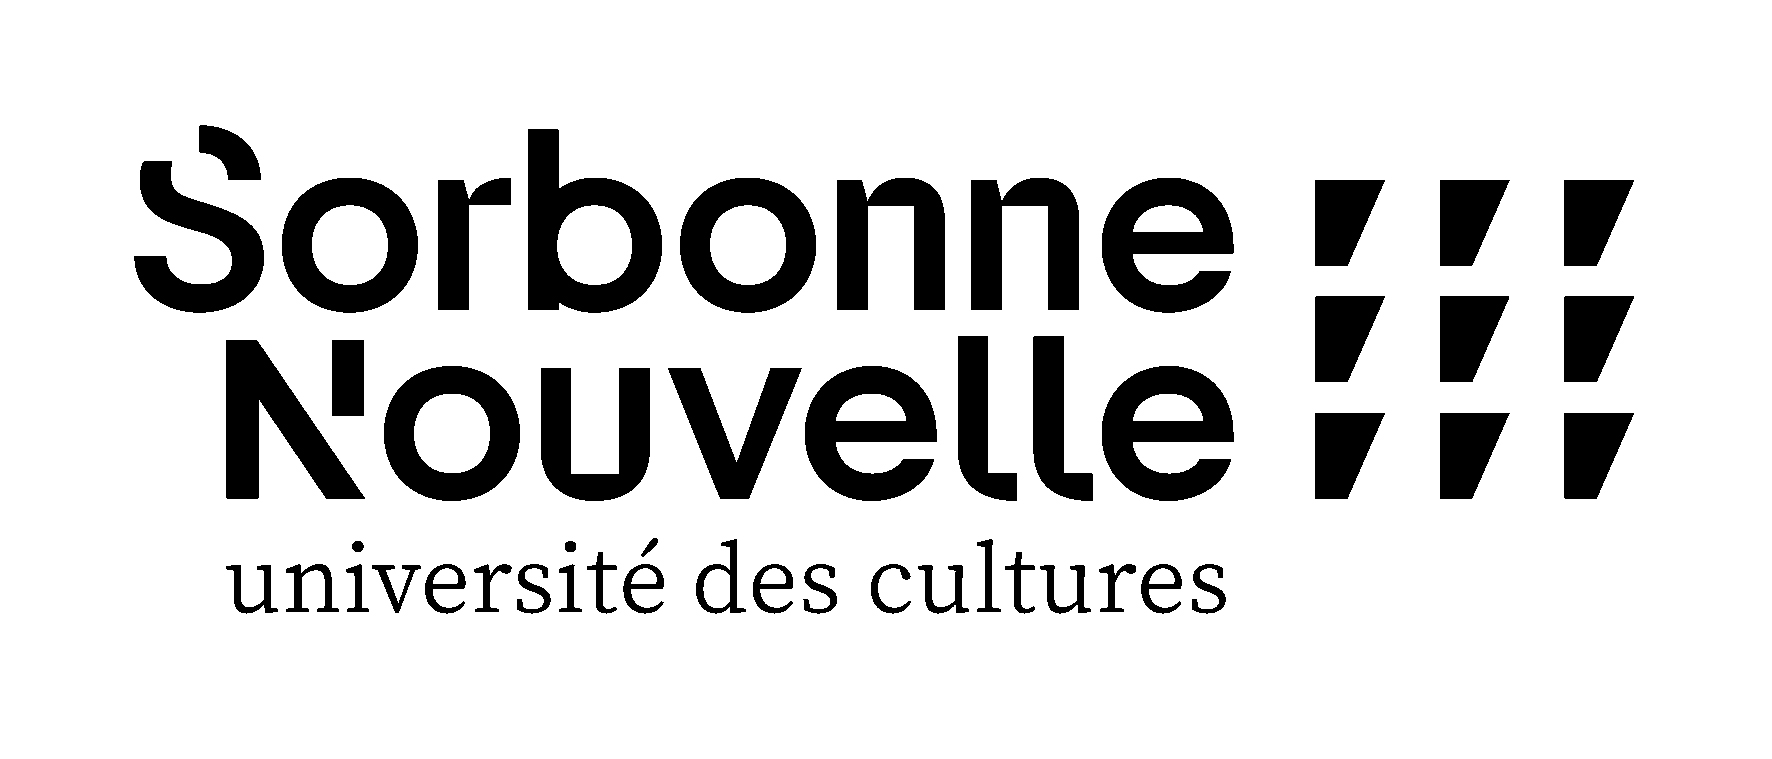 Sorbonne Nouvelle - Université des cultures - logo